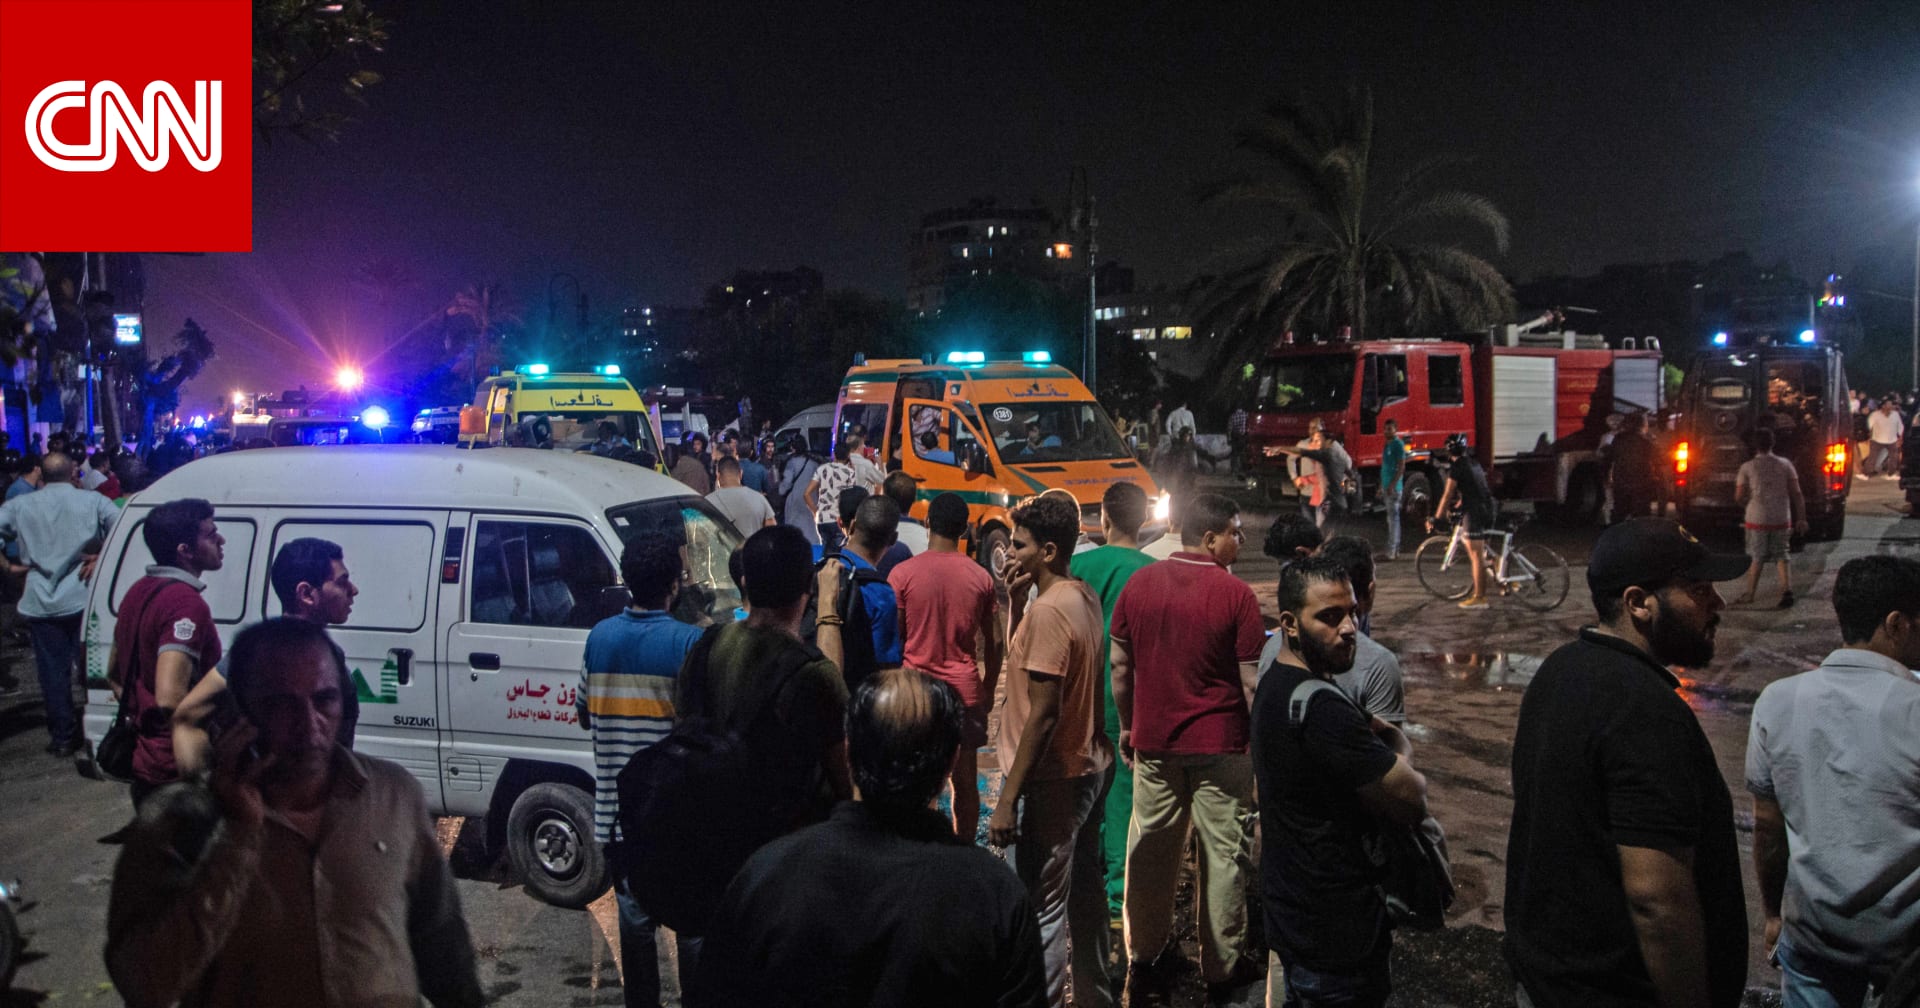 بالصور.. آثار تفجير  معهد الأورام  المتسبب في مقتل 20 شخصا في مصر - CNN Arabic